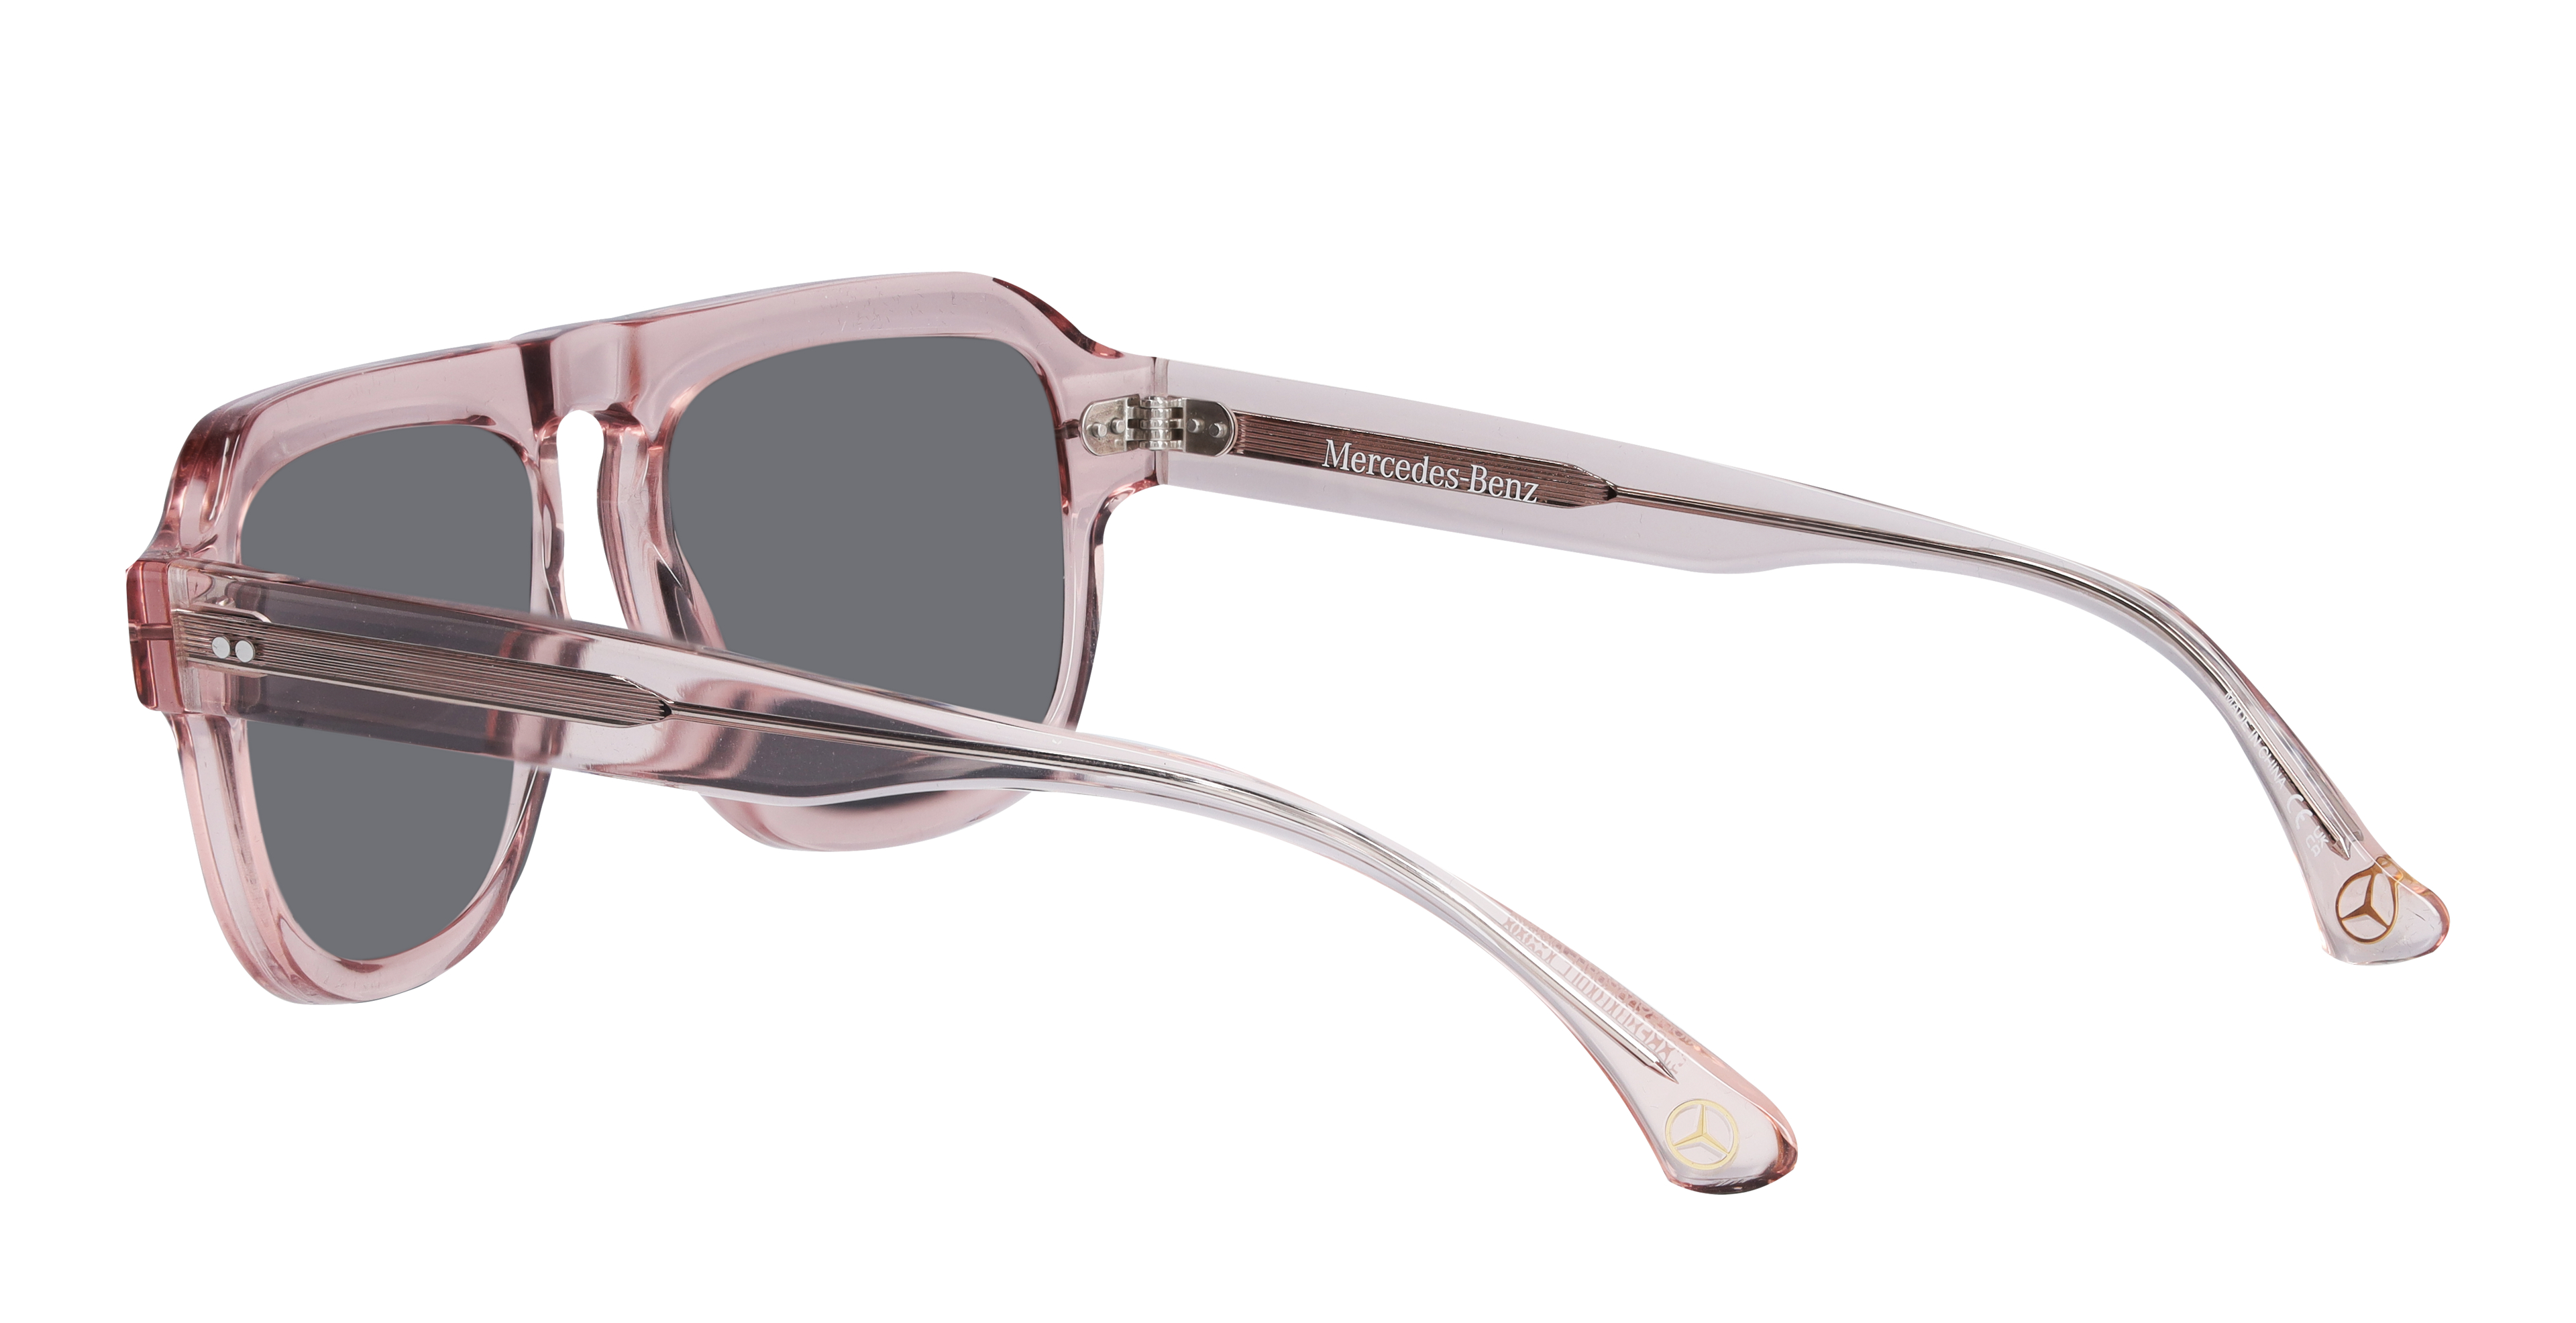 Sonnenbrille, Unisex - roségold / bronzefarben, Acetat, transparent